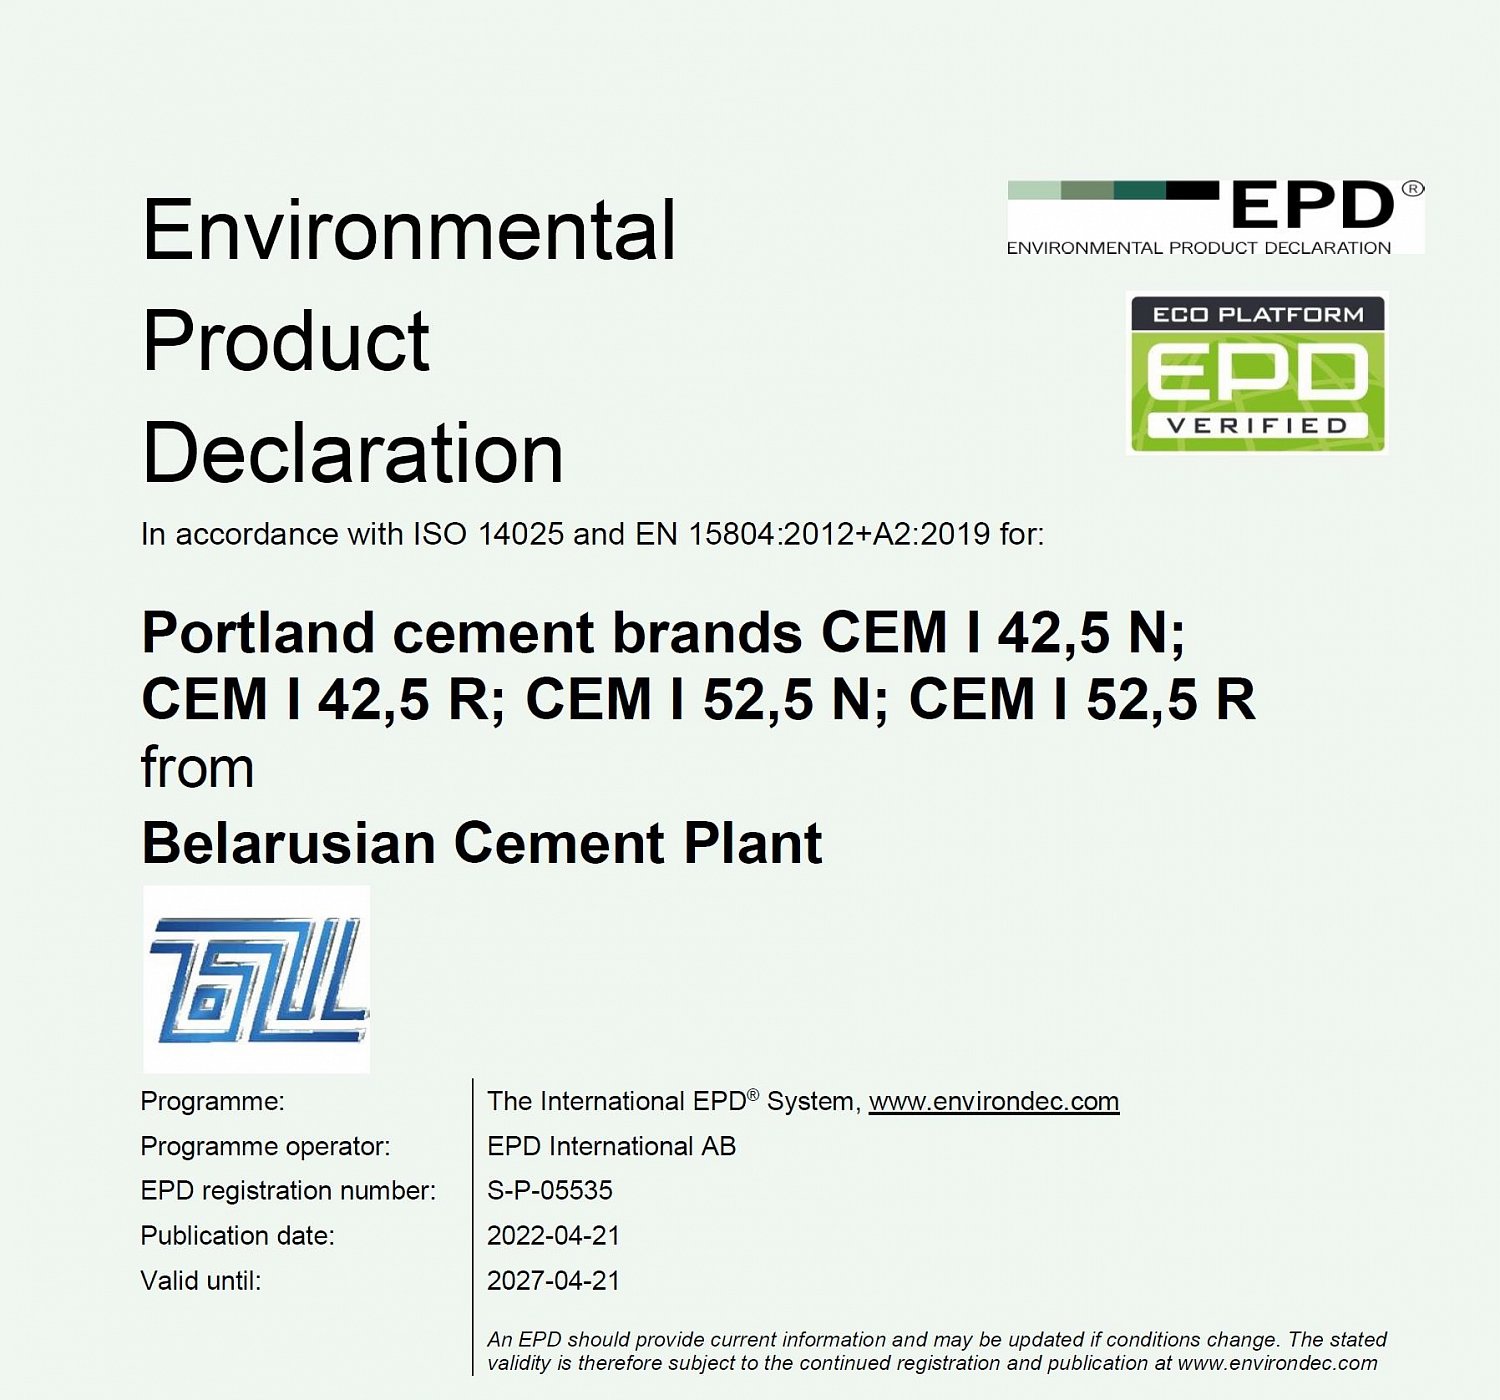 Белорусская цементная компания первой в стране получила экологическую декларацию на свою продукцию